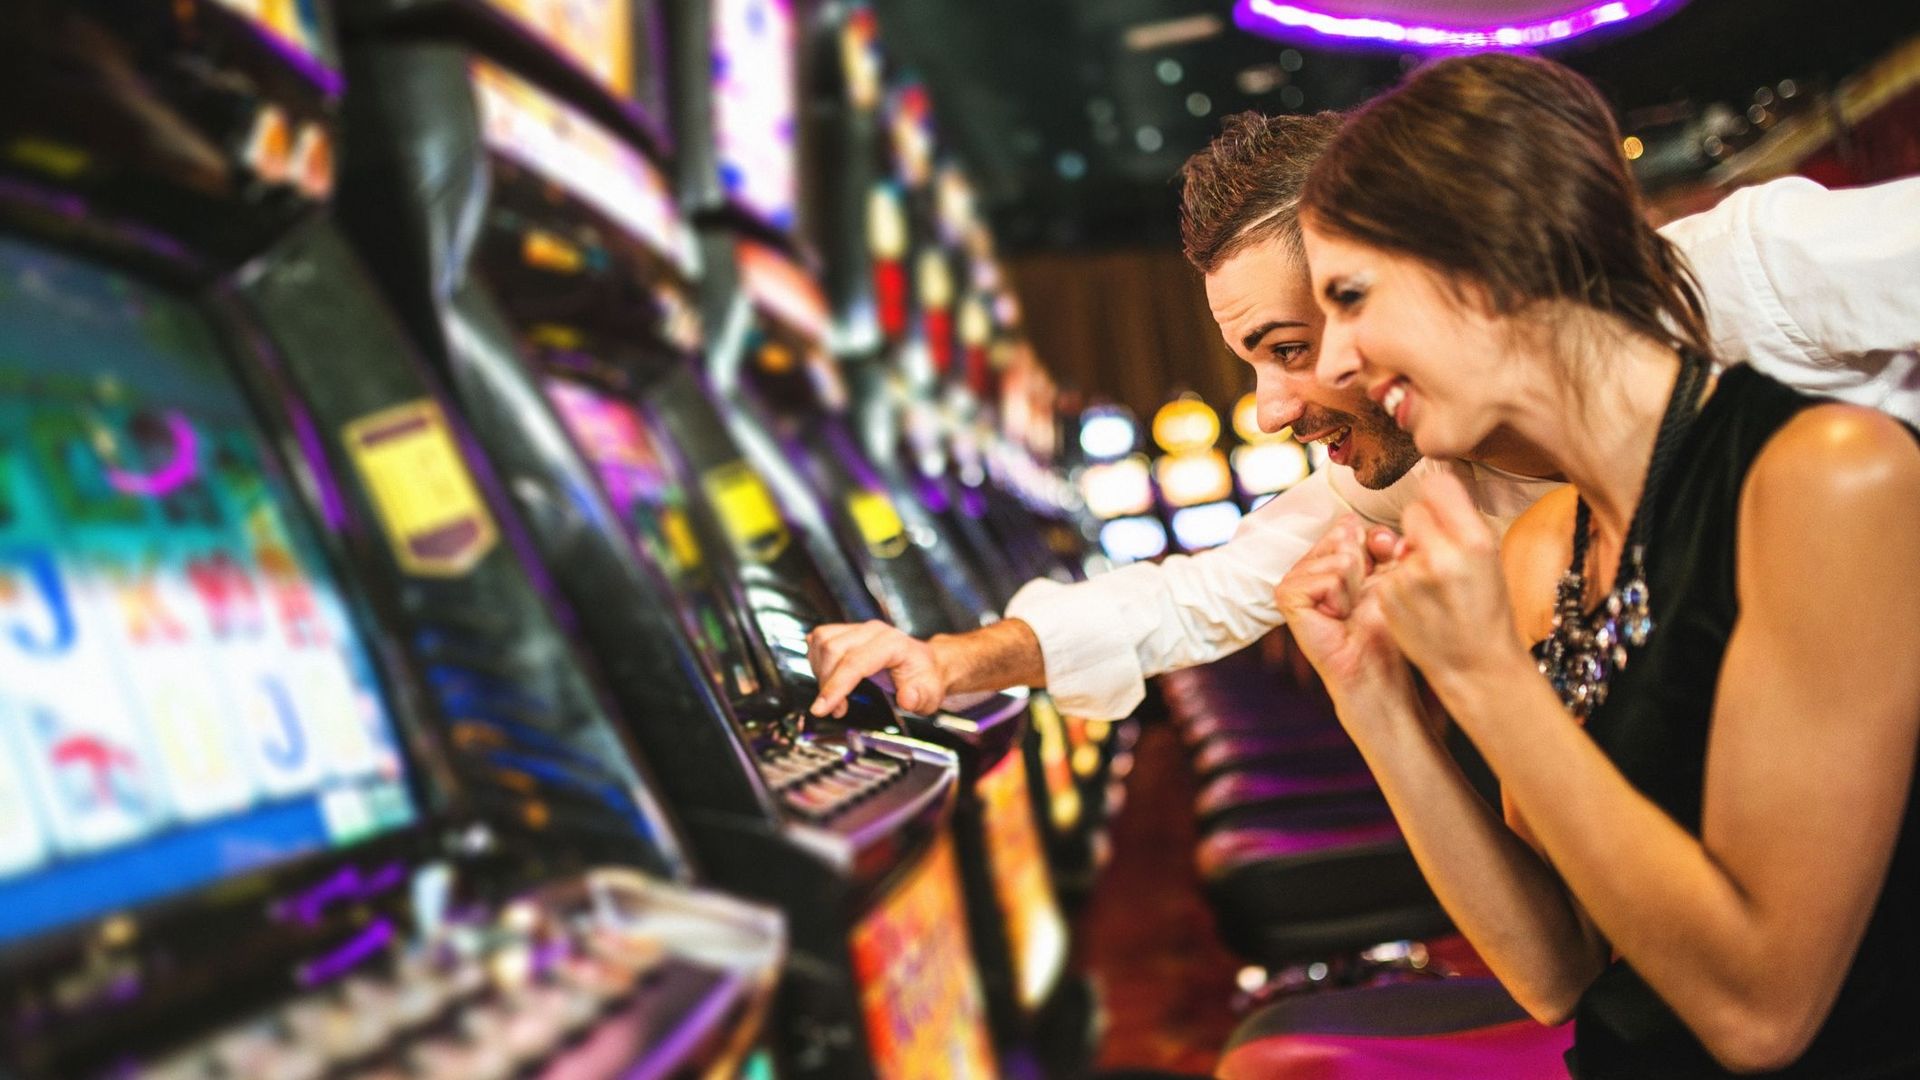 Les sons et lumières dans les casinos encouragent la prise de risque